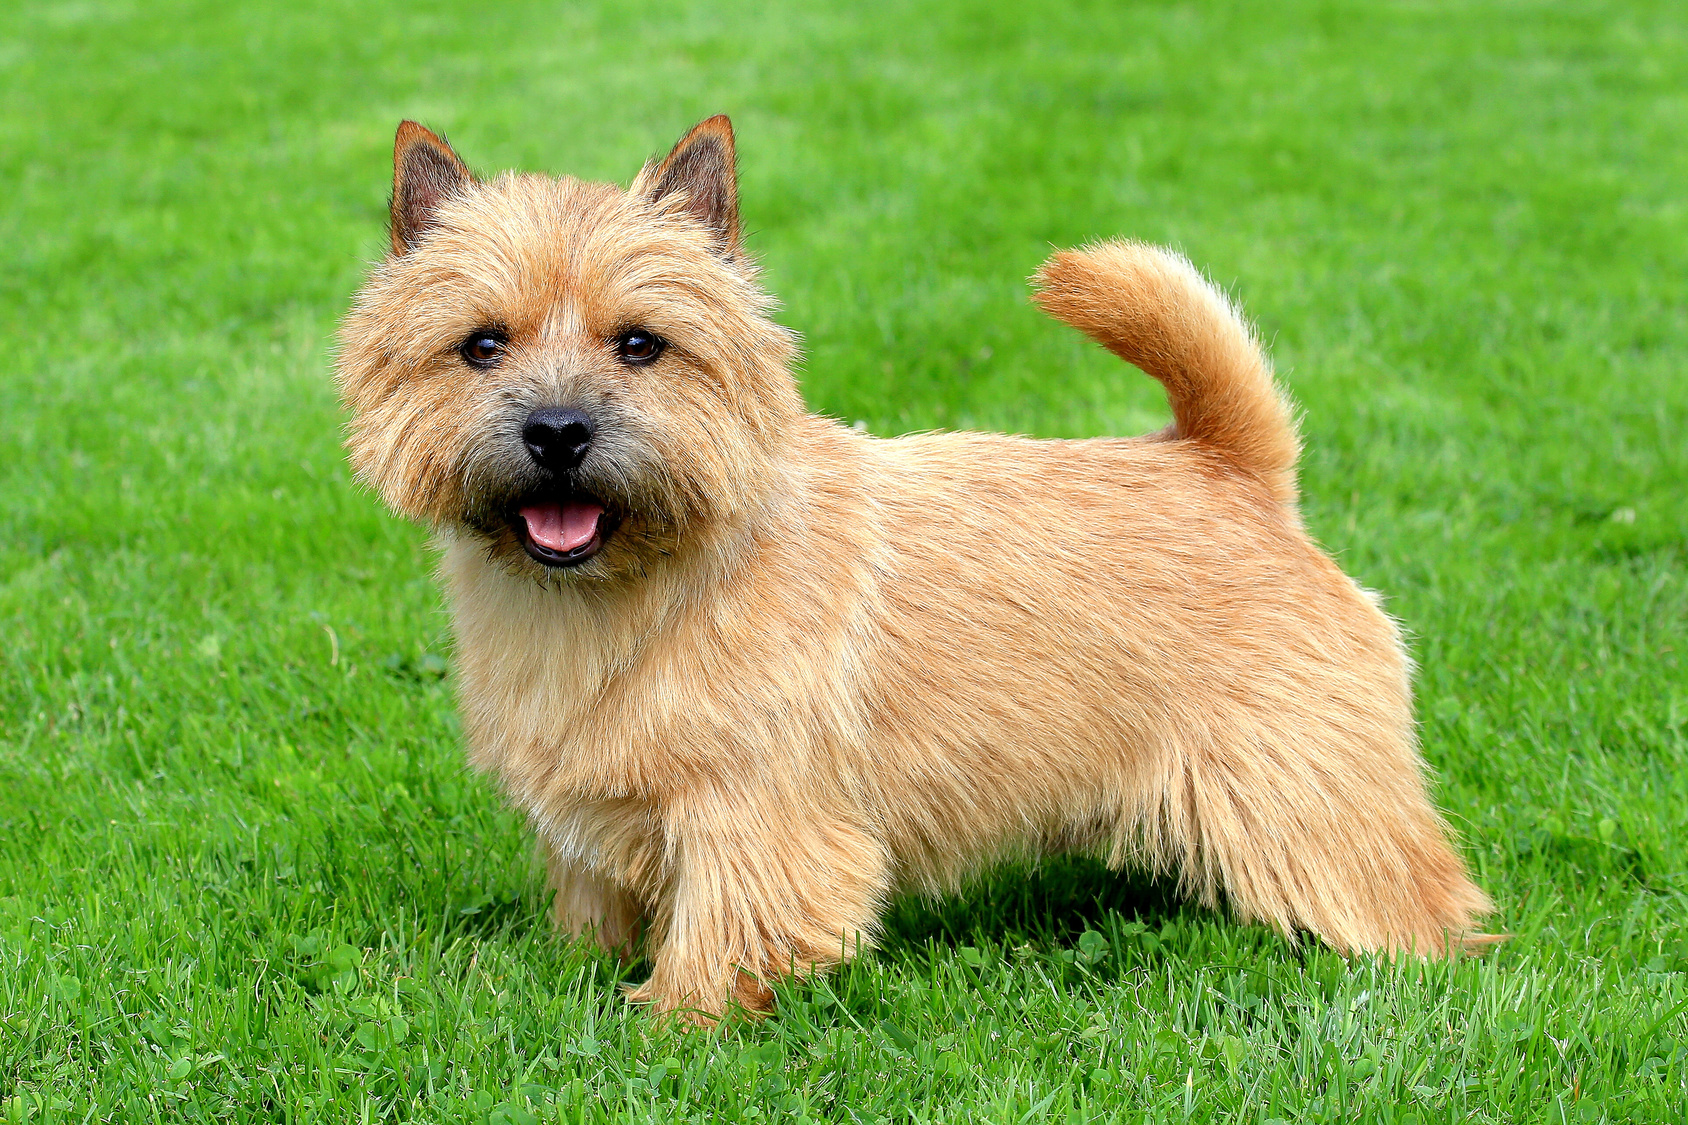 norwich terrier im grass